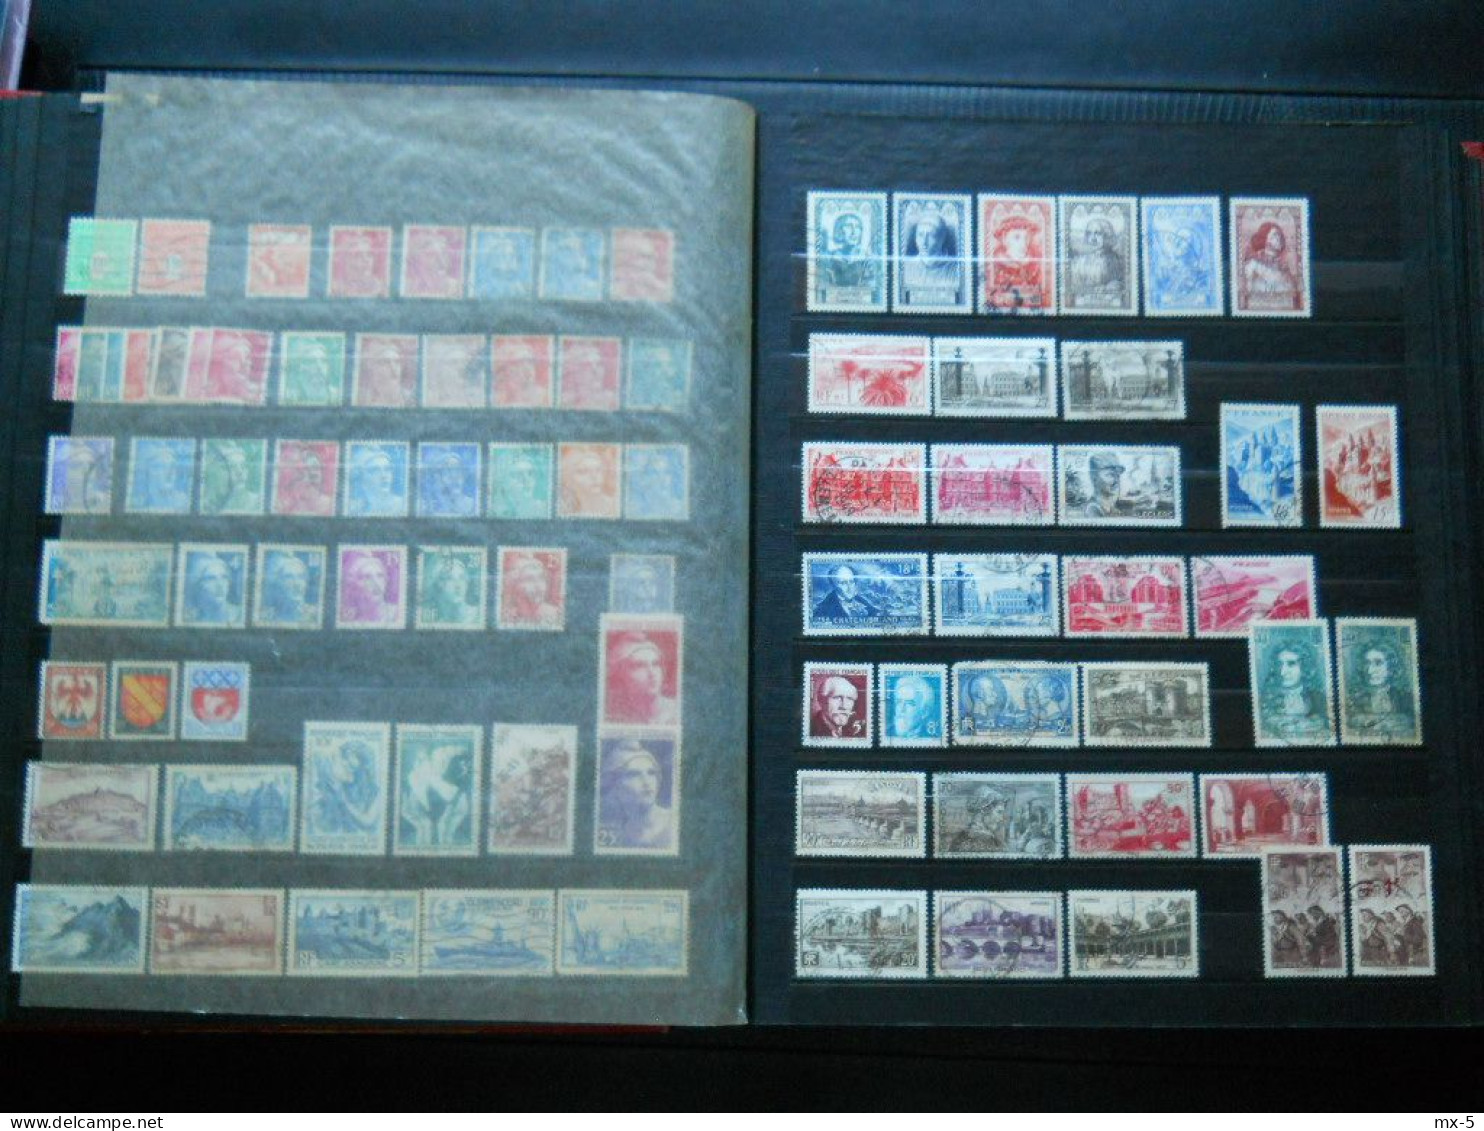 Album timbres francais oblitérés et colonies neufs et oblitérés ,plus de 2000 timbres